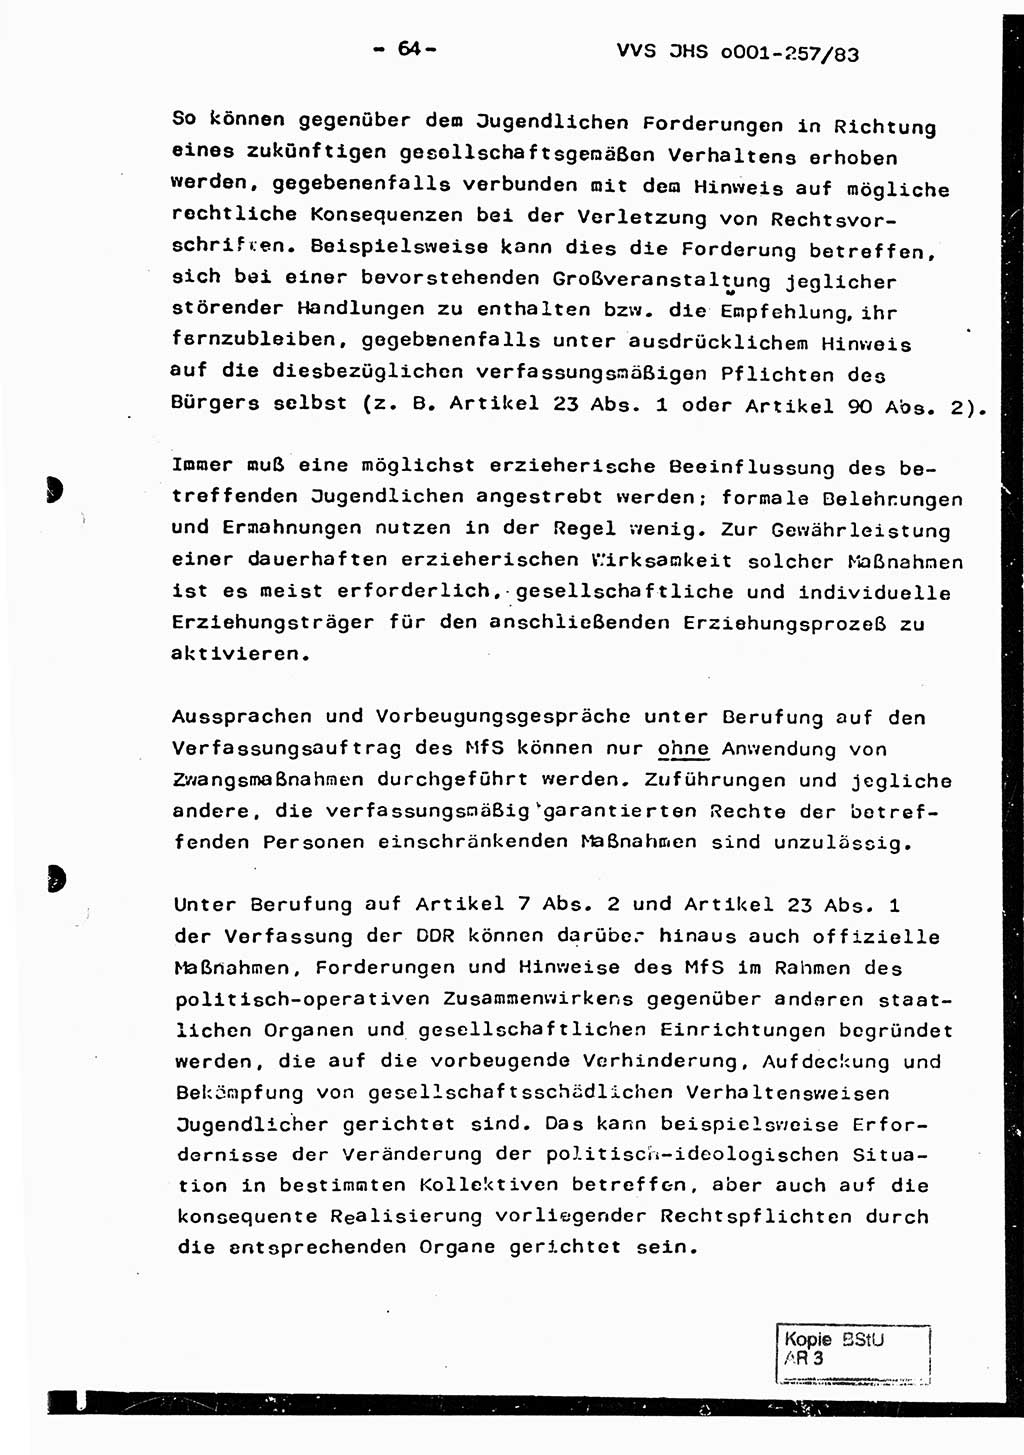 Dissertation, Oberst Helmut Lubas (BV Mdg.), Oberstleutnant Manfred Eschberger (HA IX), Oberleutnant Hans-Jürgen Ludwig (JHS), Ministerium für Staatssicherheit (MfS) [Deutsche Demokratische Republik (DDR)], Juristische Hochschule (JHS), Vertrauliche Verschlußsache (VVS) o001-257/83, Potsdam 1983, Seite 64 (Diss. MfS DDR JHS VVS o001-257/83 1983, S. 64)